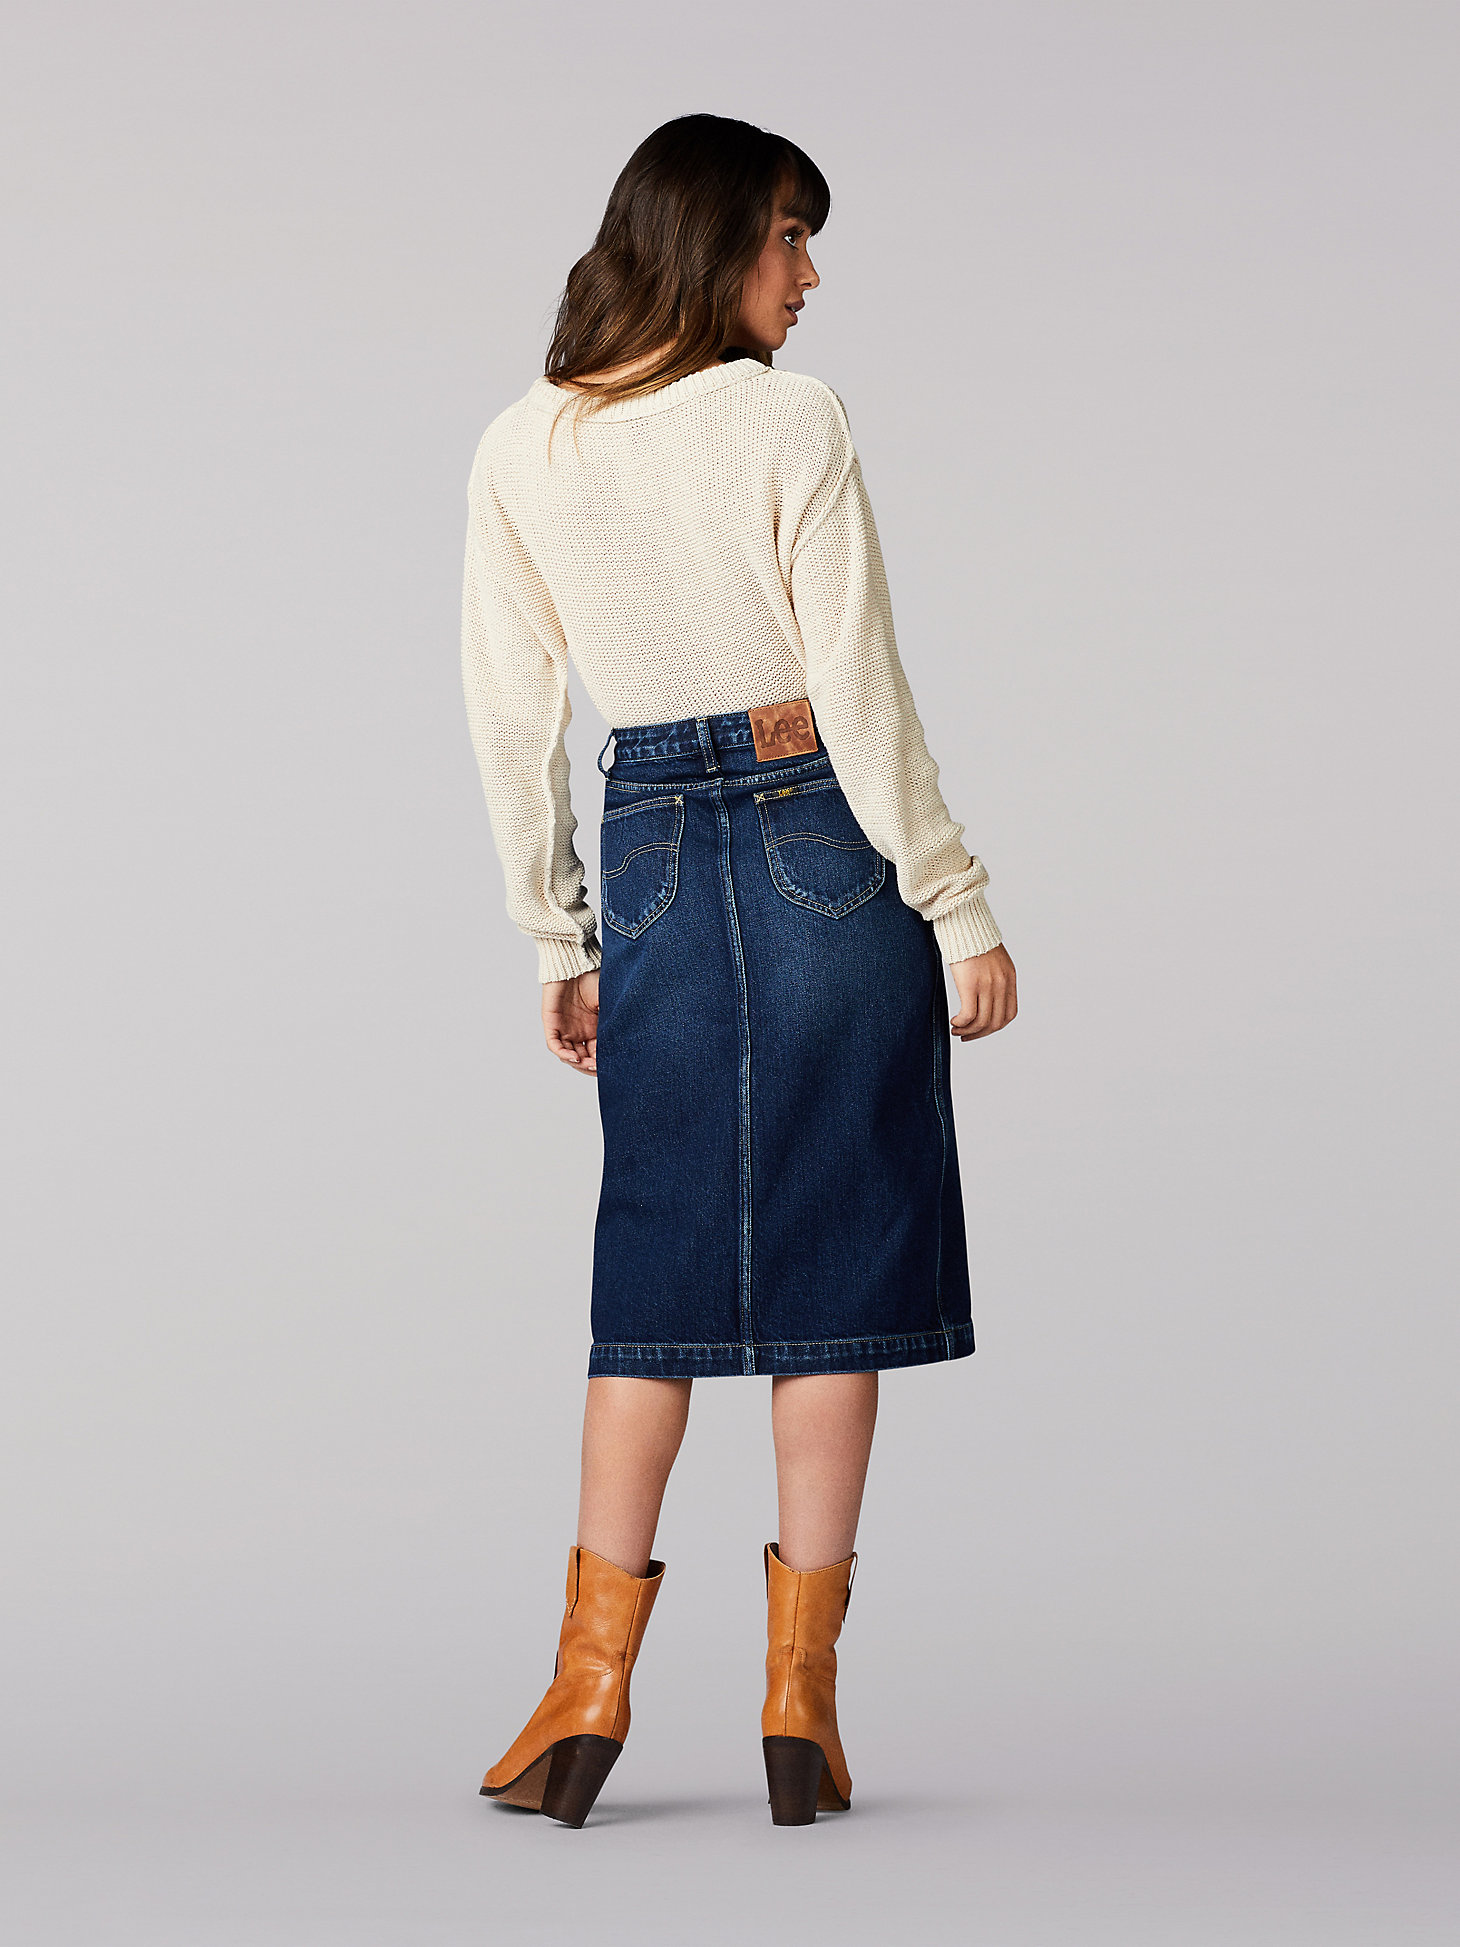 Women’s Vintage Modern High Rise Midi Skirt in Kansas Blue alternative view 1